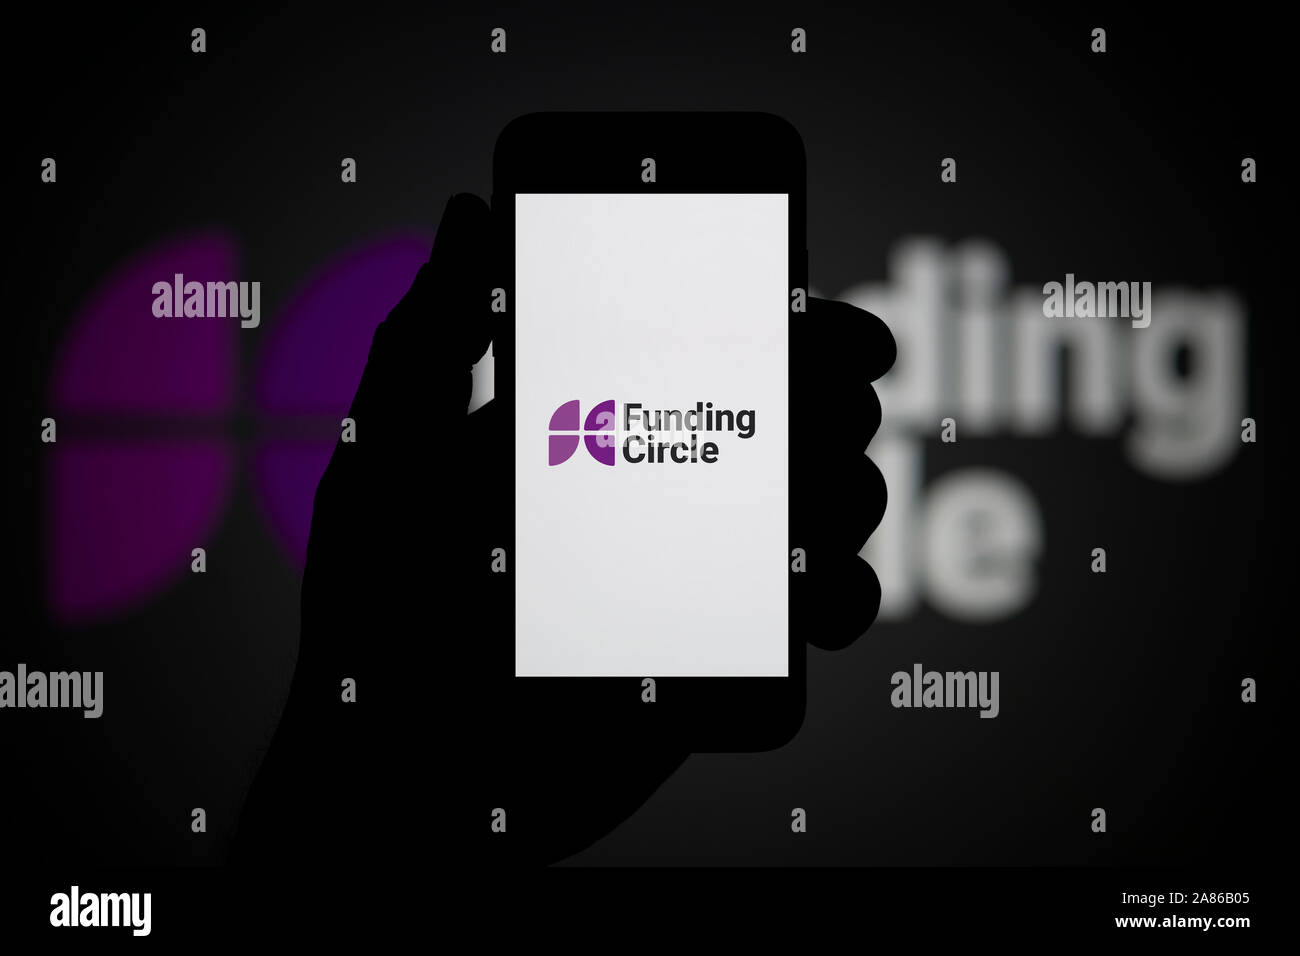 Un uomo guarda al suo iPhone che visualizza il finanziamento del logo a forma di cerchio, con lo stesso logo in background (solo uso editoriale). Foto Stock